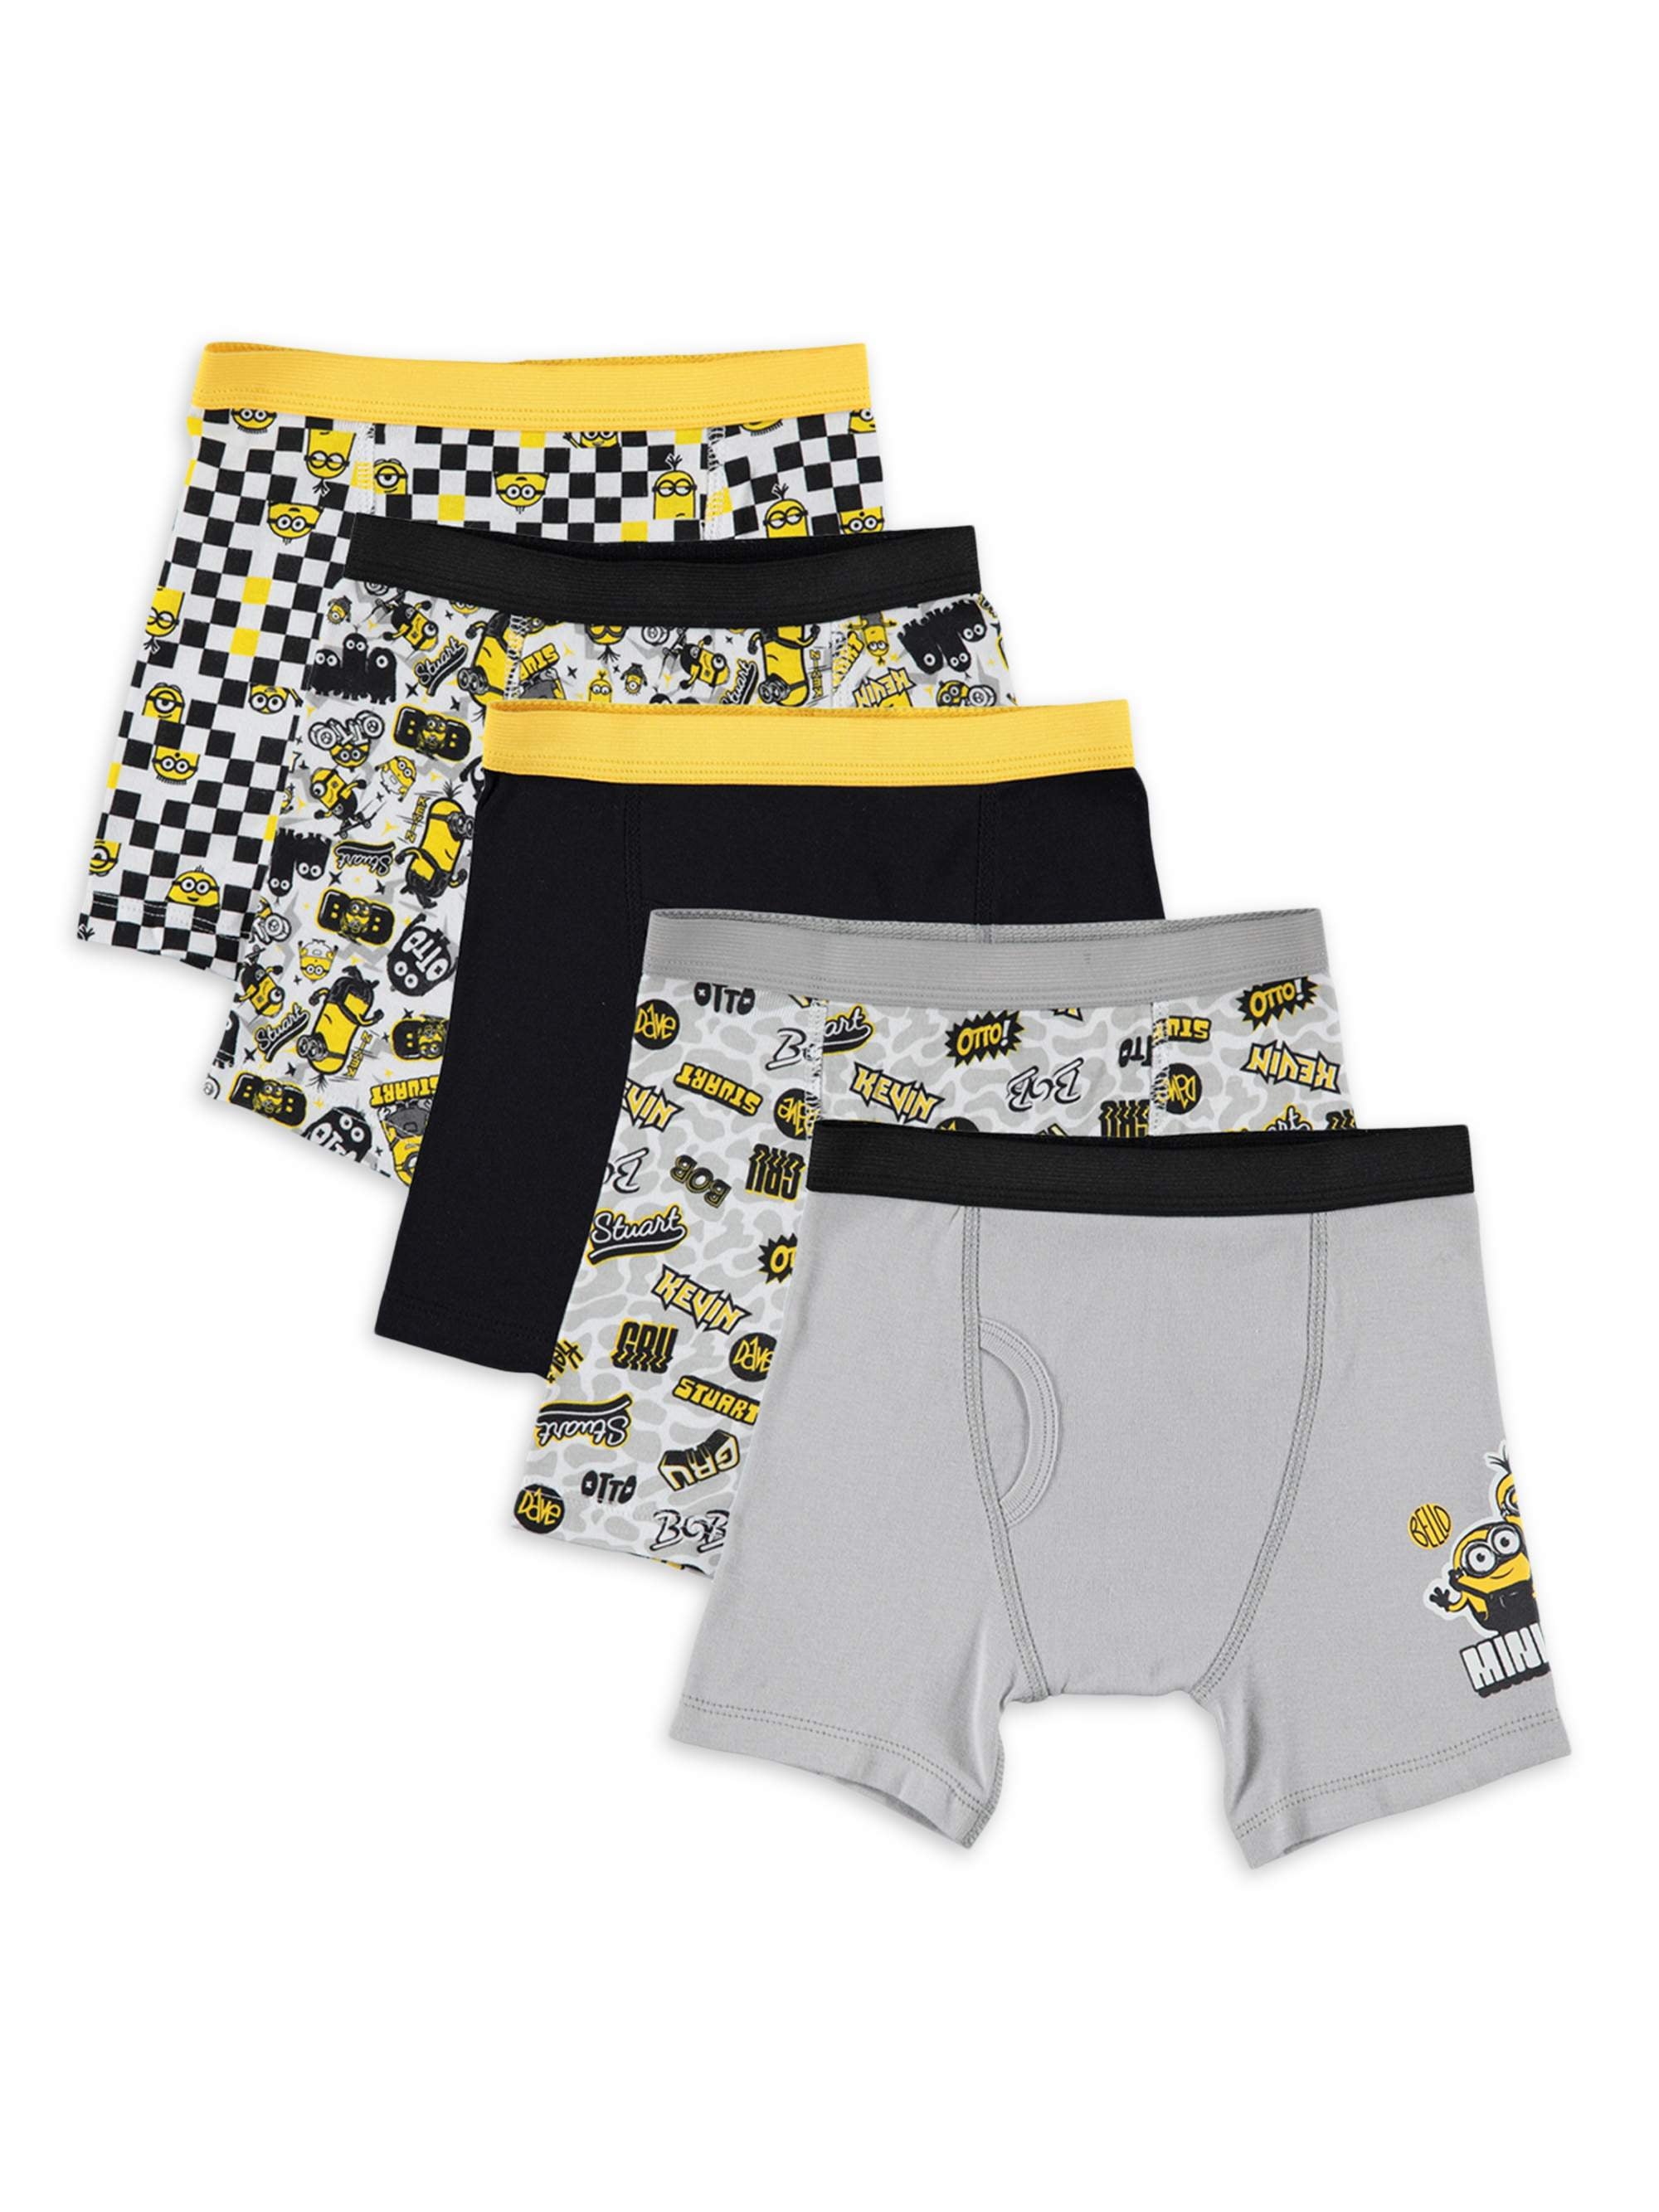 Minions Boys Underwear, 5 Pack Boxer Briefs Sizes 4-6 